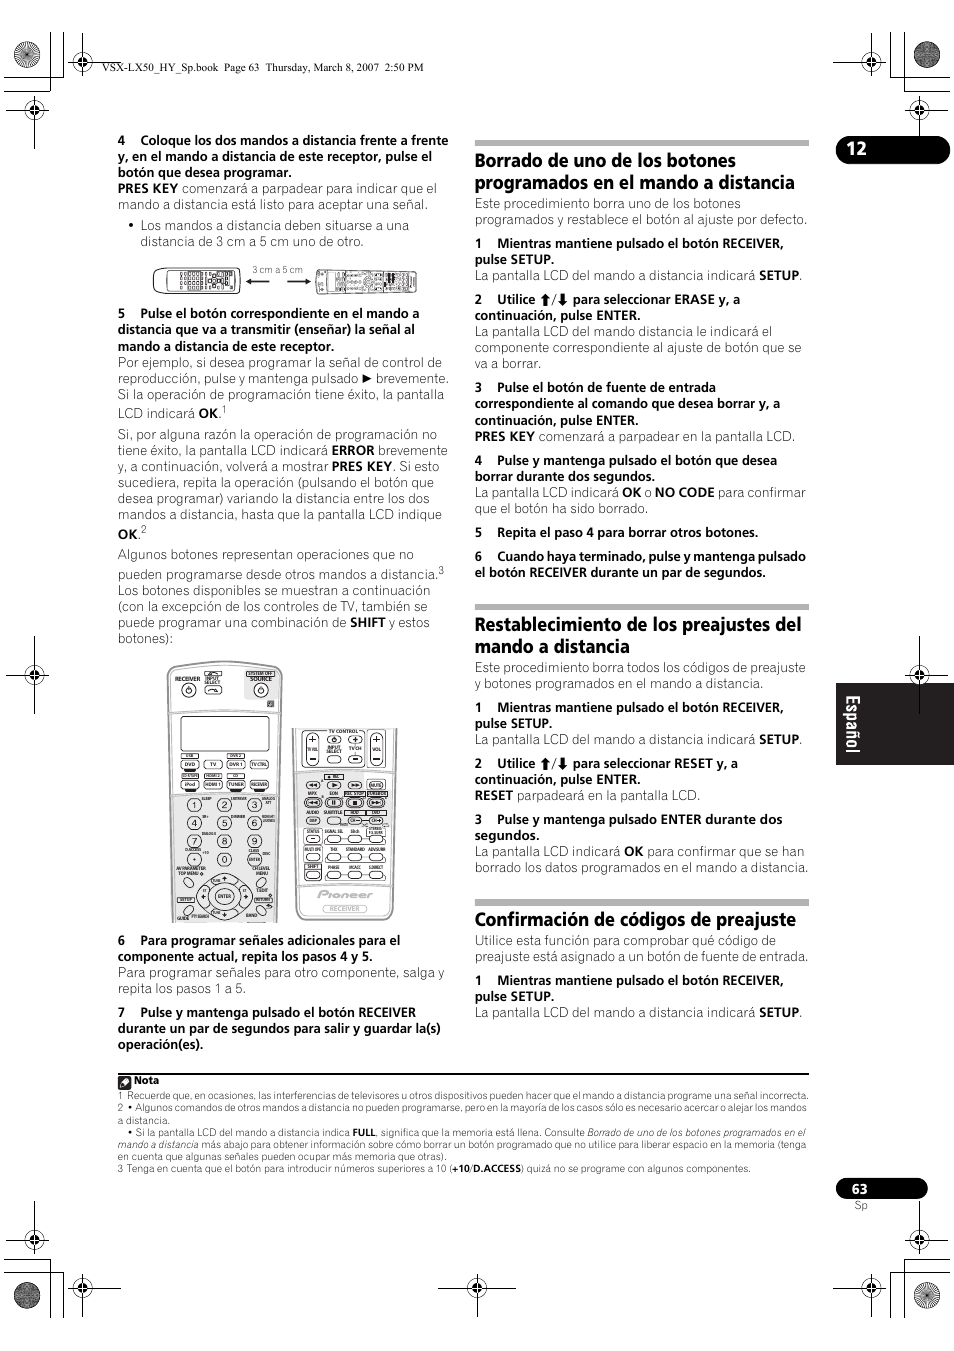 Confirmación de códigos de preajuste | Pioneer VSX-LX50 Manual del usuario | Página 63 / 82